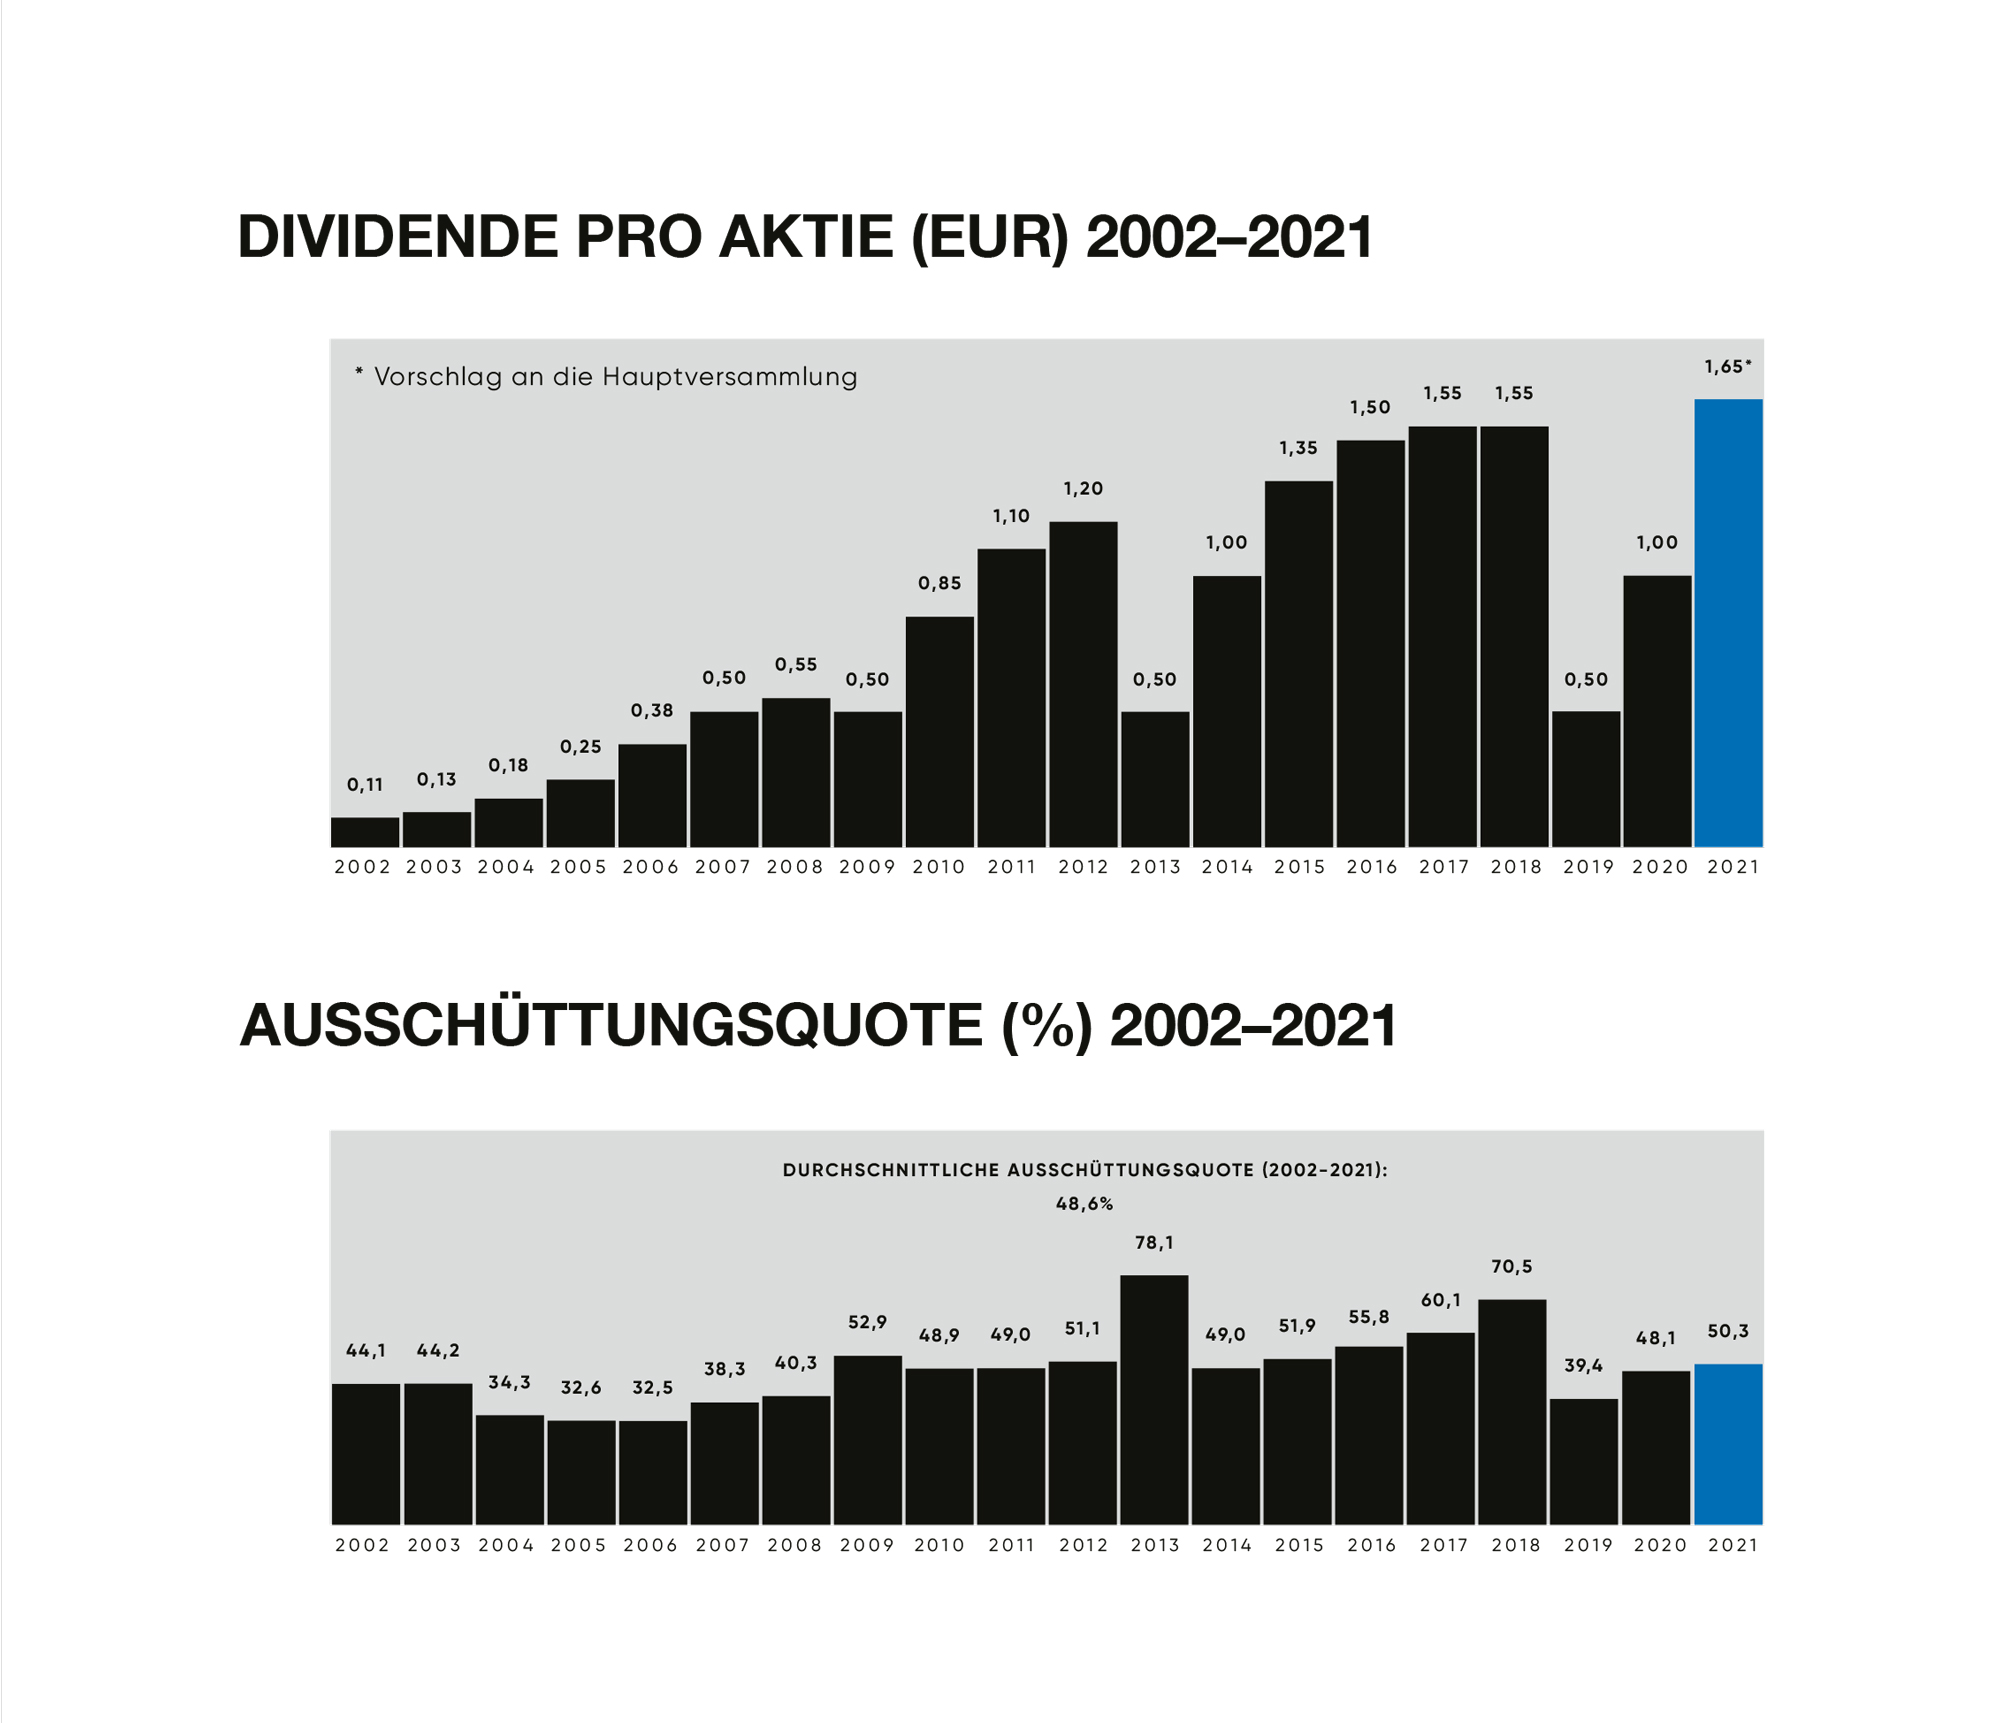 Dividende pro Aktie 2002-2021 / Ausschüttungsquote 2002-2021